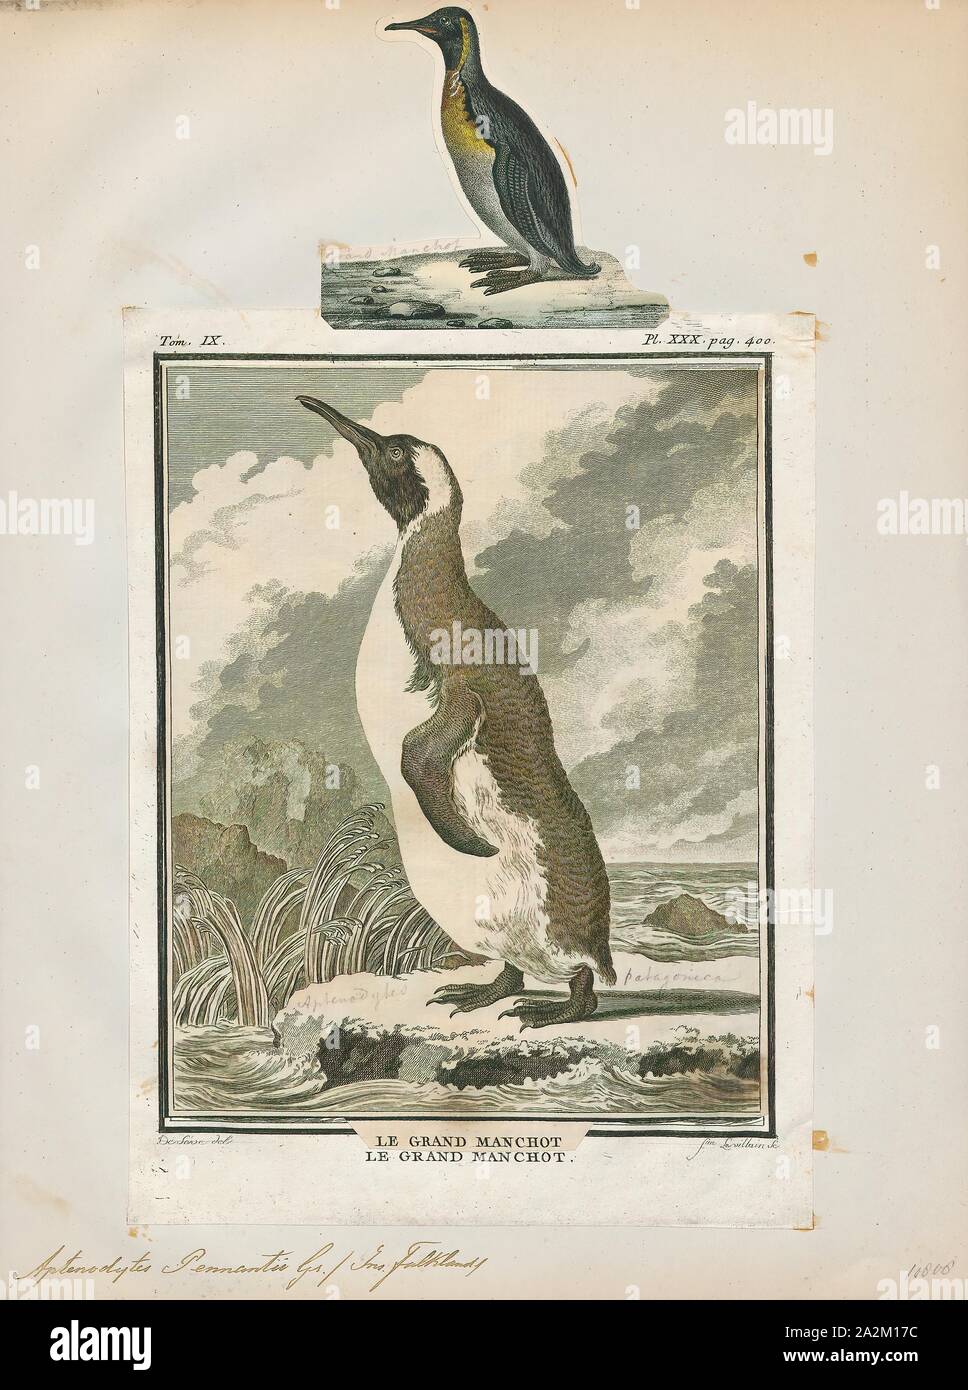 Pennantii Aptenodytes, Ausdrucken, die Gattung Aptenodytes enthält zwei bestehenden Arten der Pinguine gemeinsam bekannt als "der große Pinguine., 1700-1880 Stockfoto